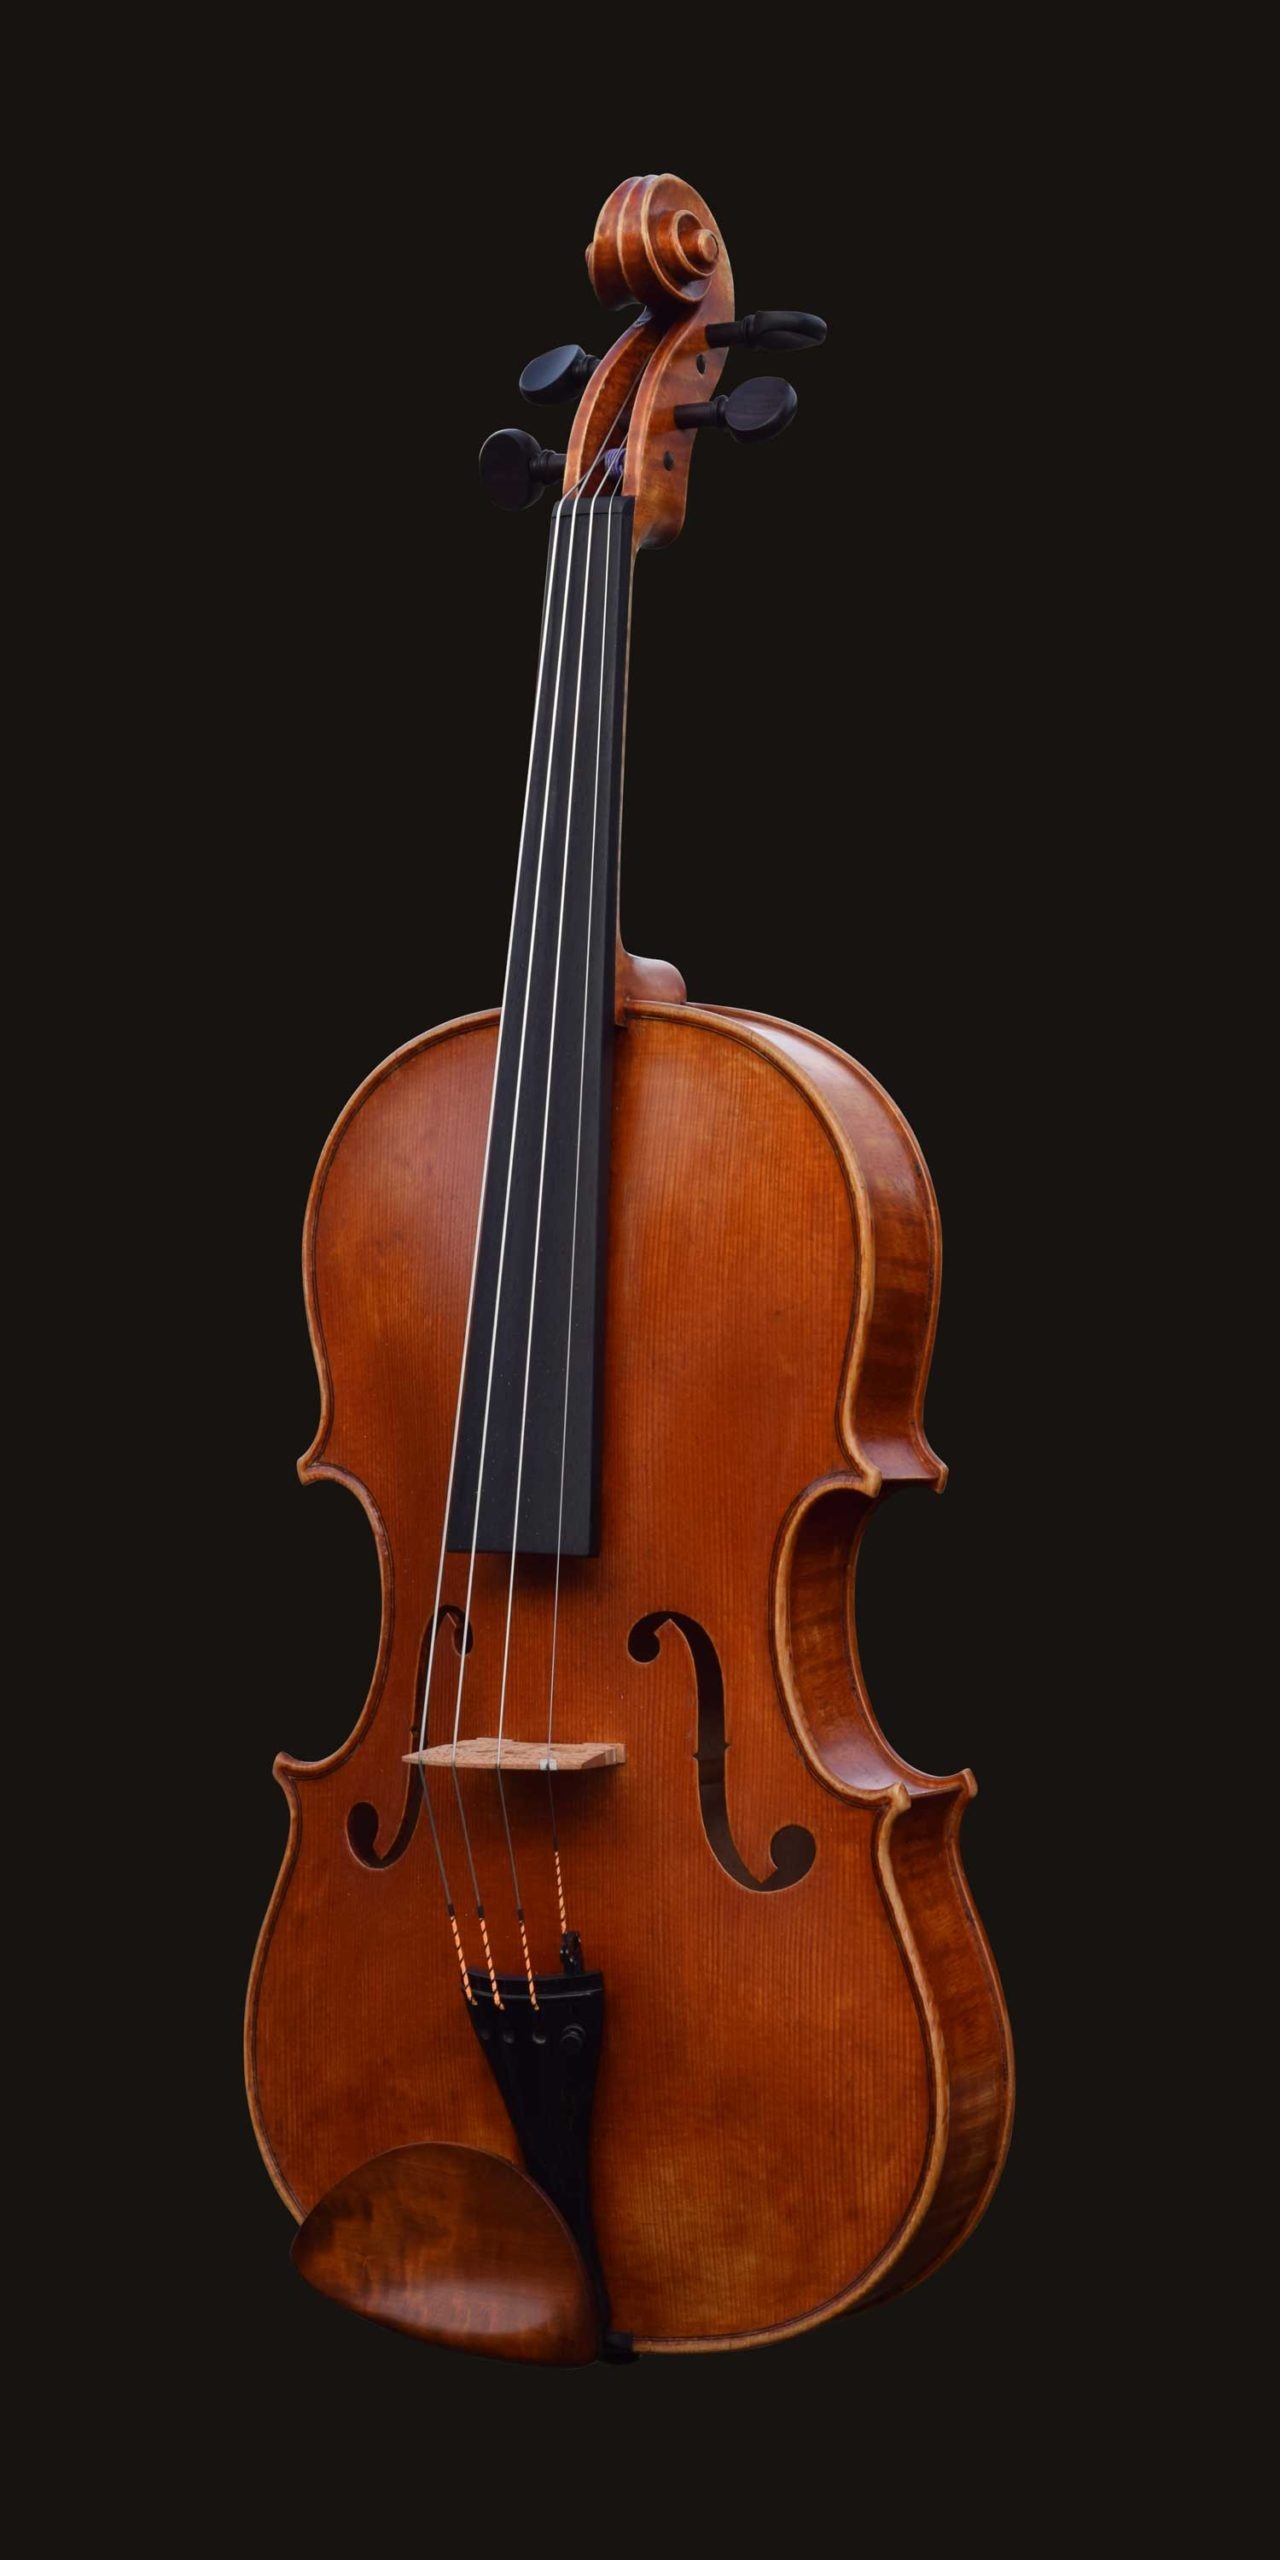 Viola: William Castle, Violin Master, Est. 1985, Violin Family. 1280x2560 HD Wallpaper.